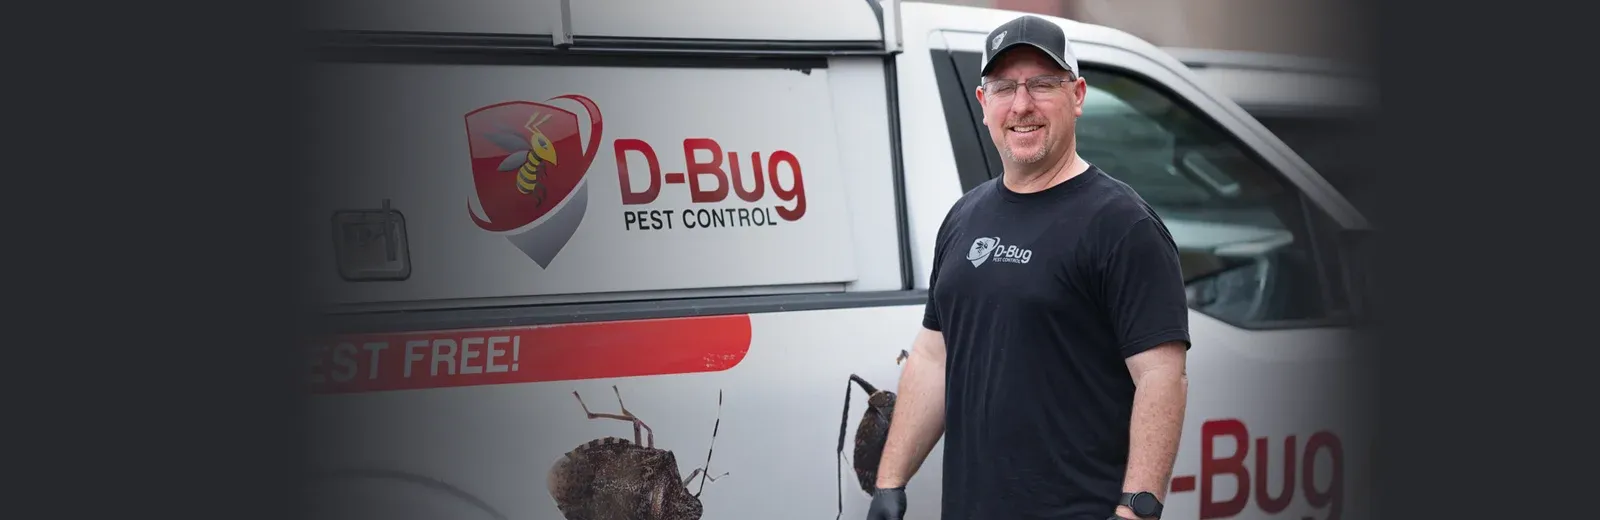 D-Bug Pest Technician standing next to truck